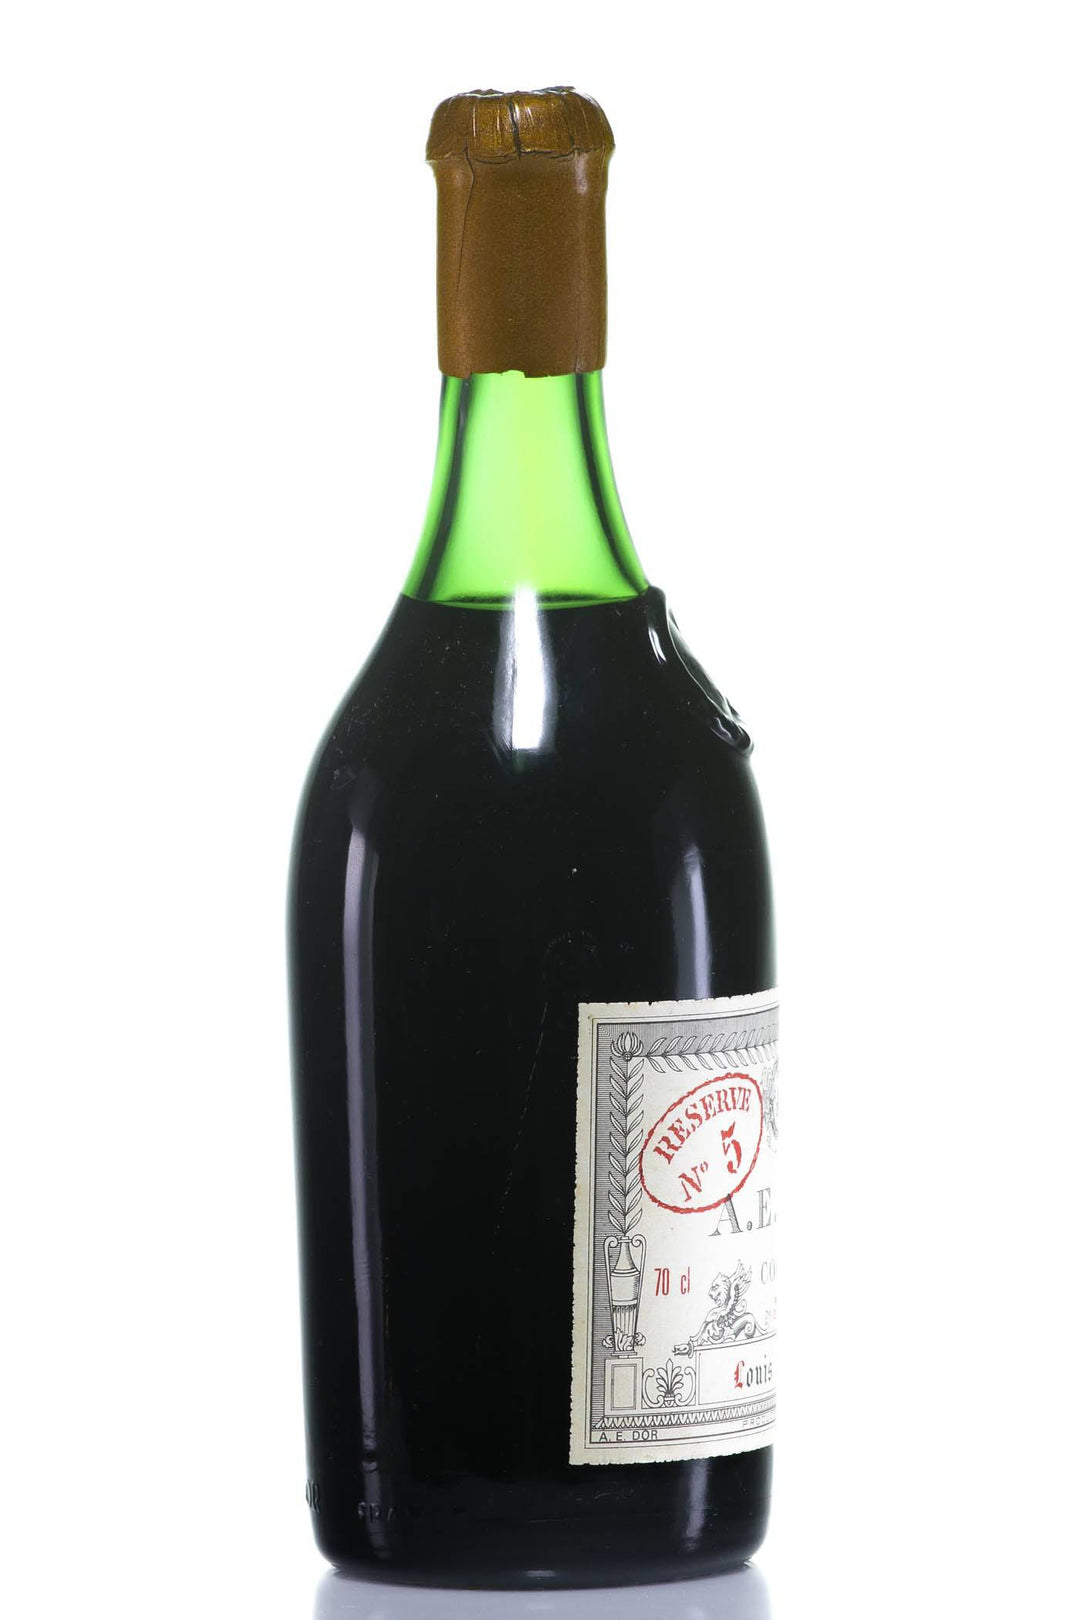 A.E. Dor Vieille Reserve No. 5 1840 Cognac (Grande Champagne) - Rue Pinard